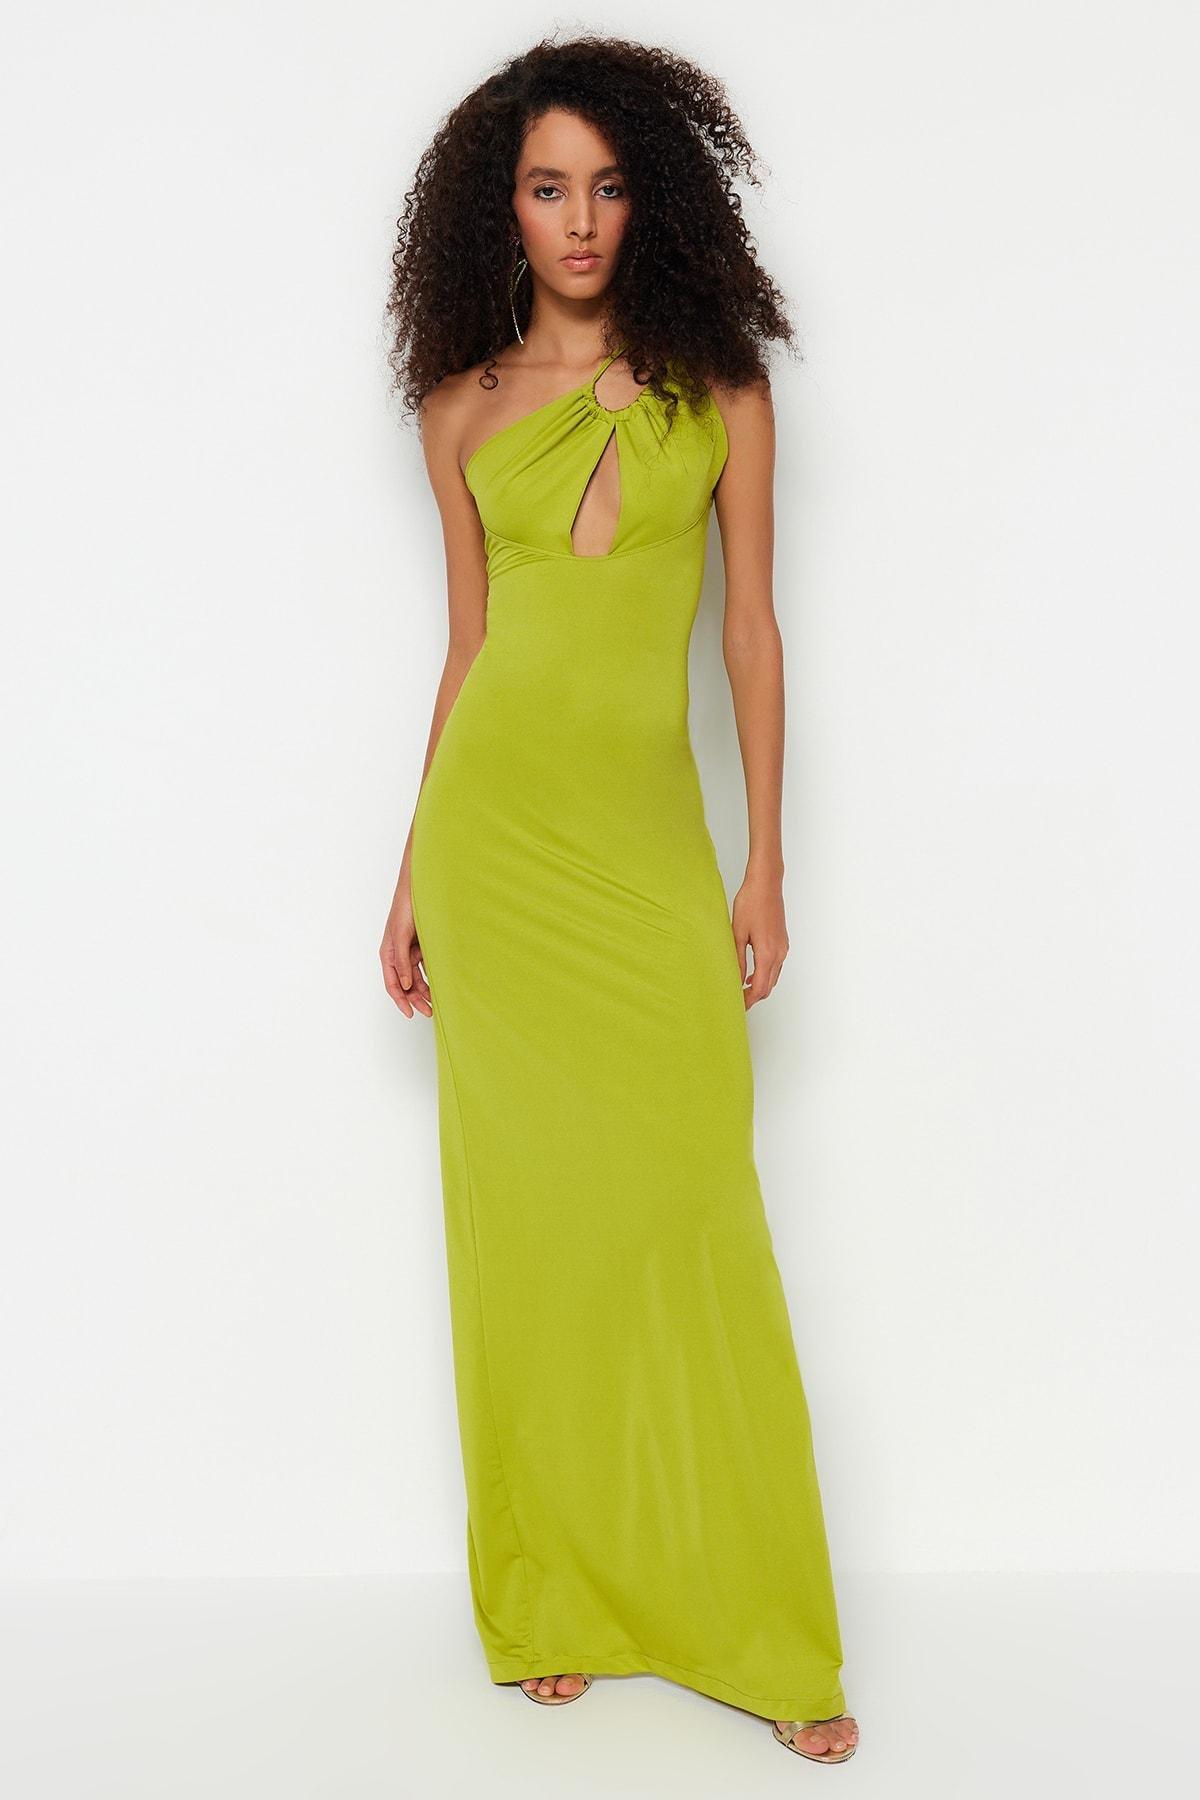 Trendyol - Green Asymmetrical Collar Occasionwear Dress